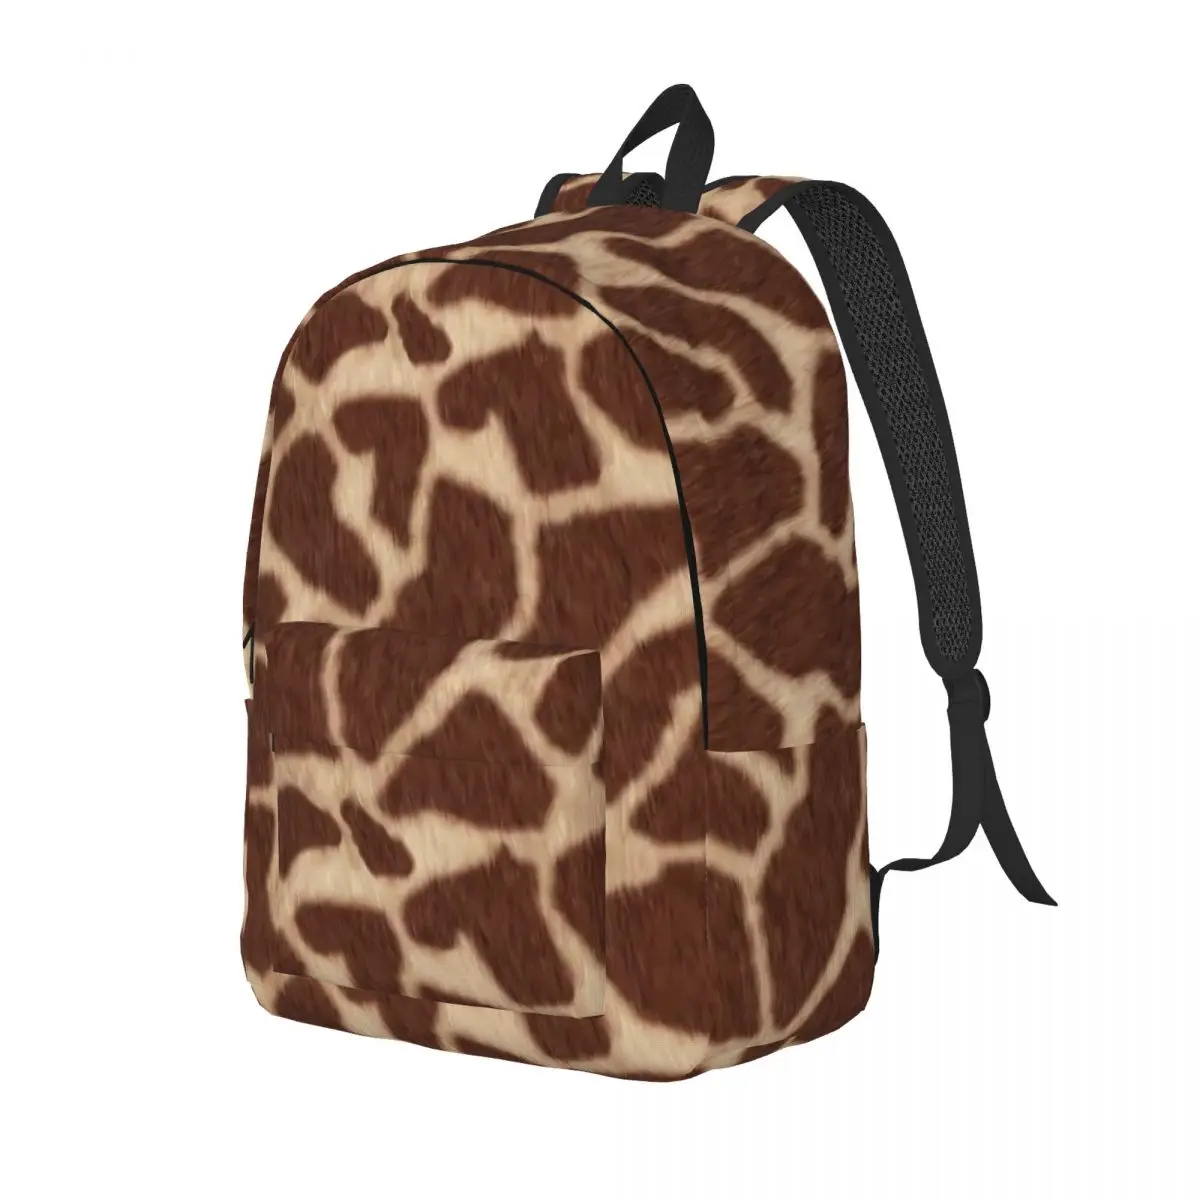 

Рюкзак с принтом жирафа, коричневые дорожные рюкзаки с животными, уличная одежда для мальчиков, школьные ранцы, яркий мягкий рюкзак